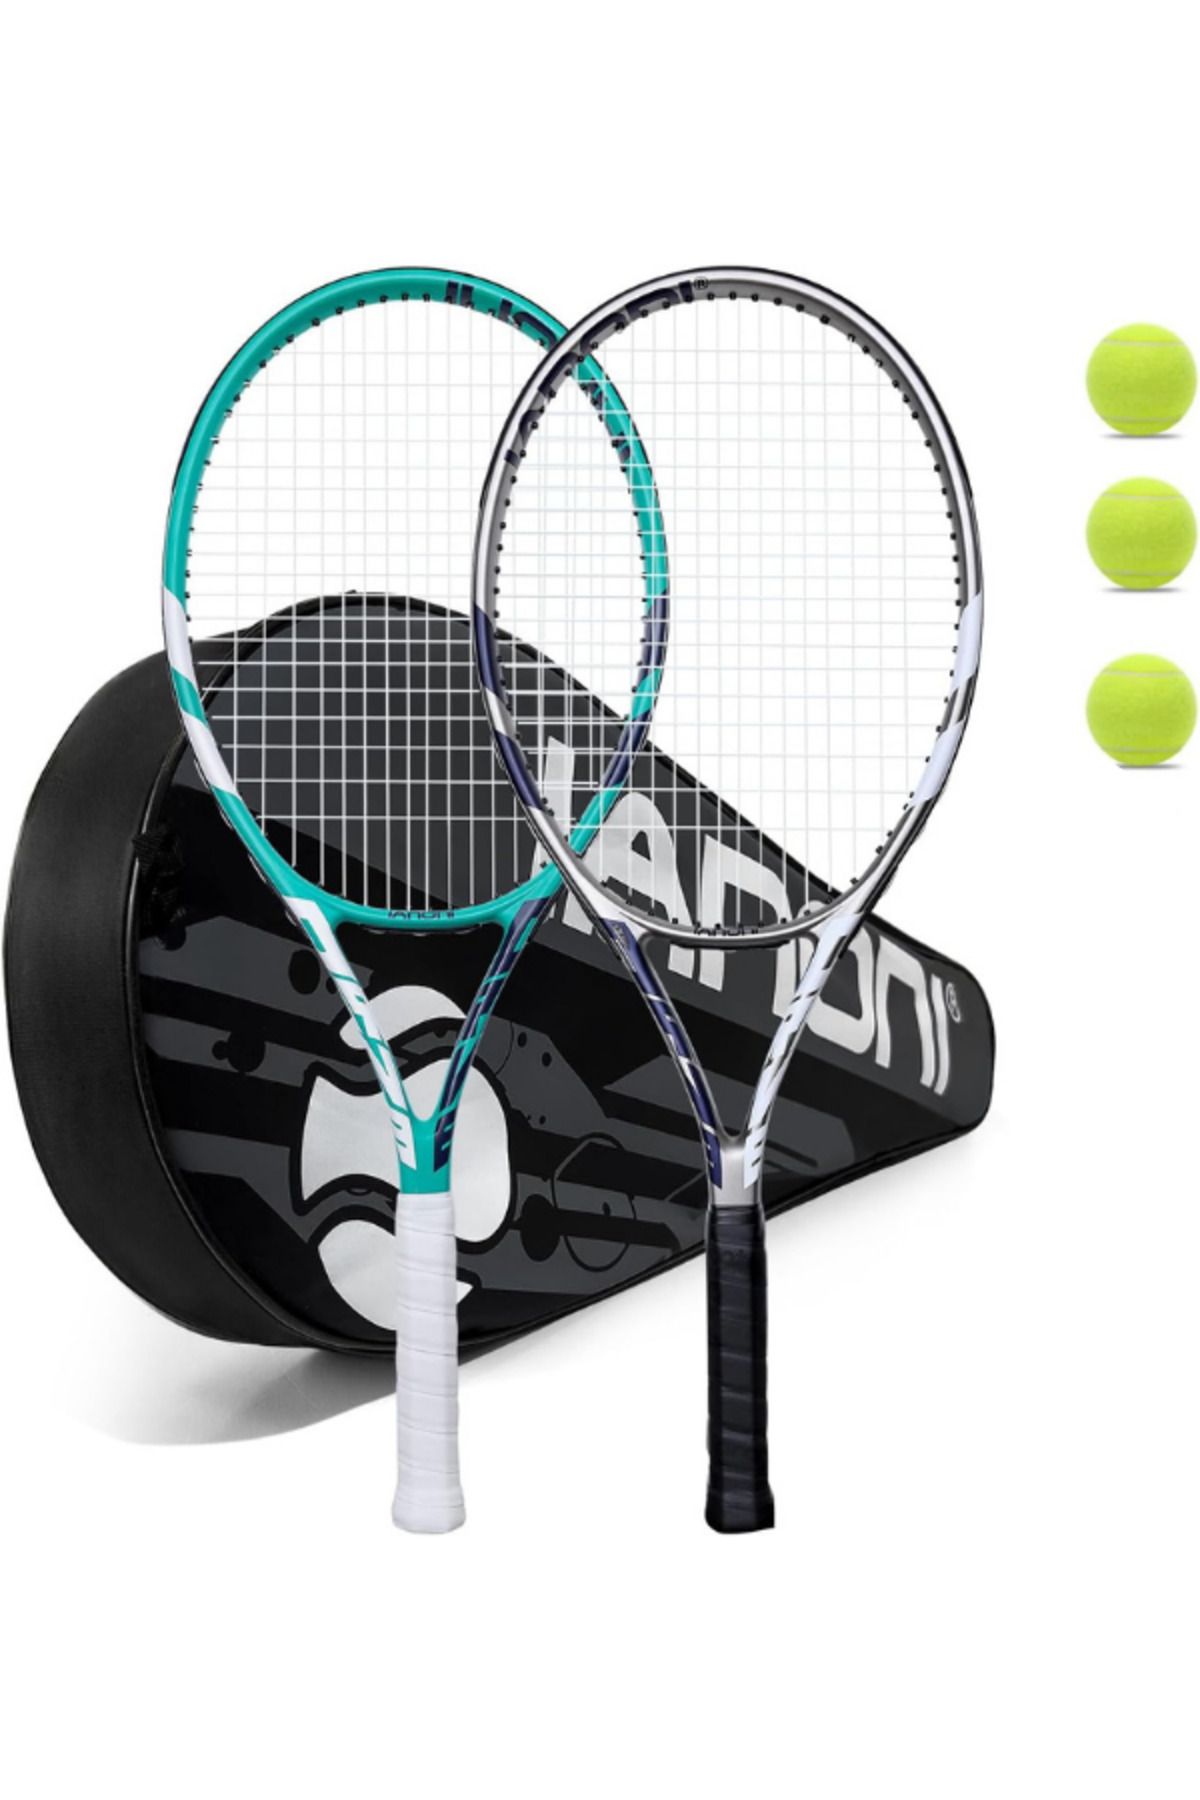 Janissary 27inç Yetişkin Tenis Raketi "1 Adet" ve "3 Adet" Tenis Topu, Deluxe Tenis Çantası